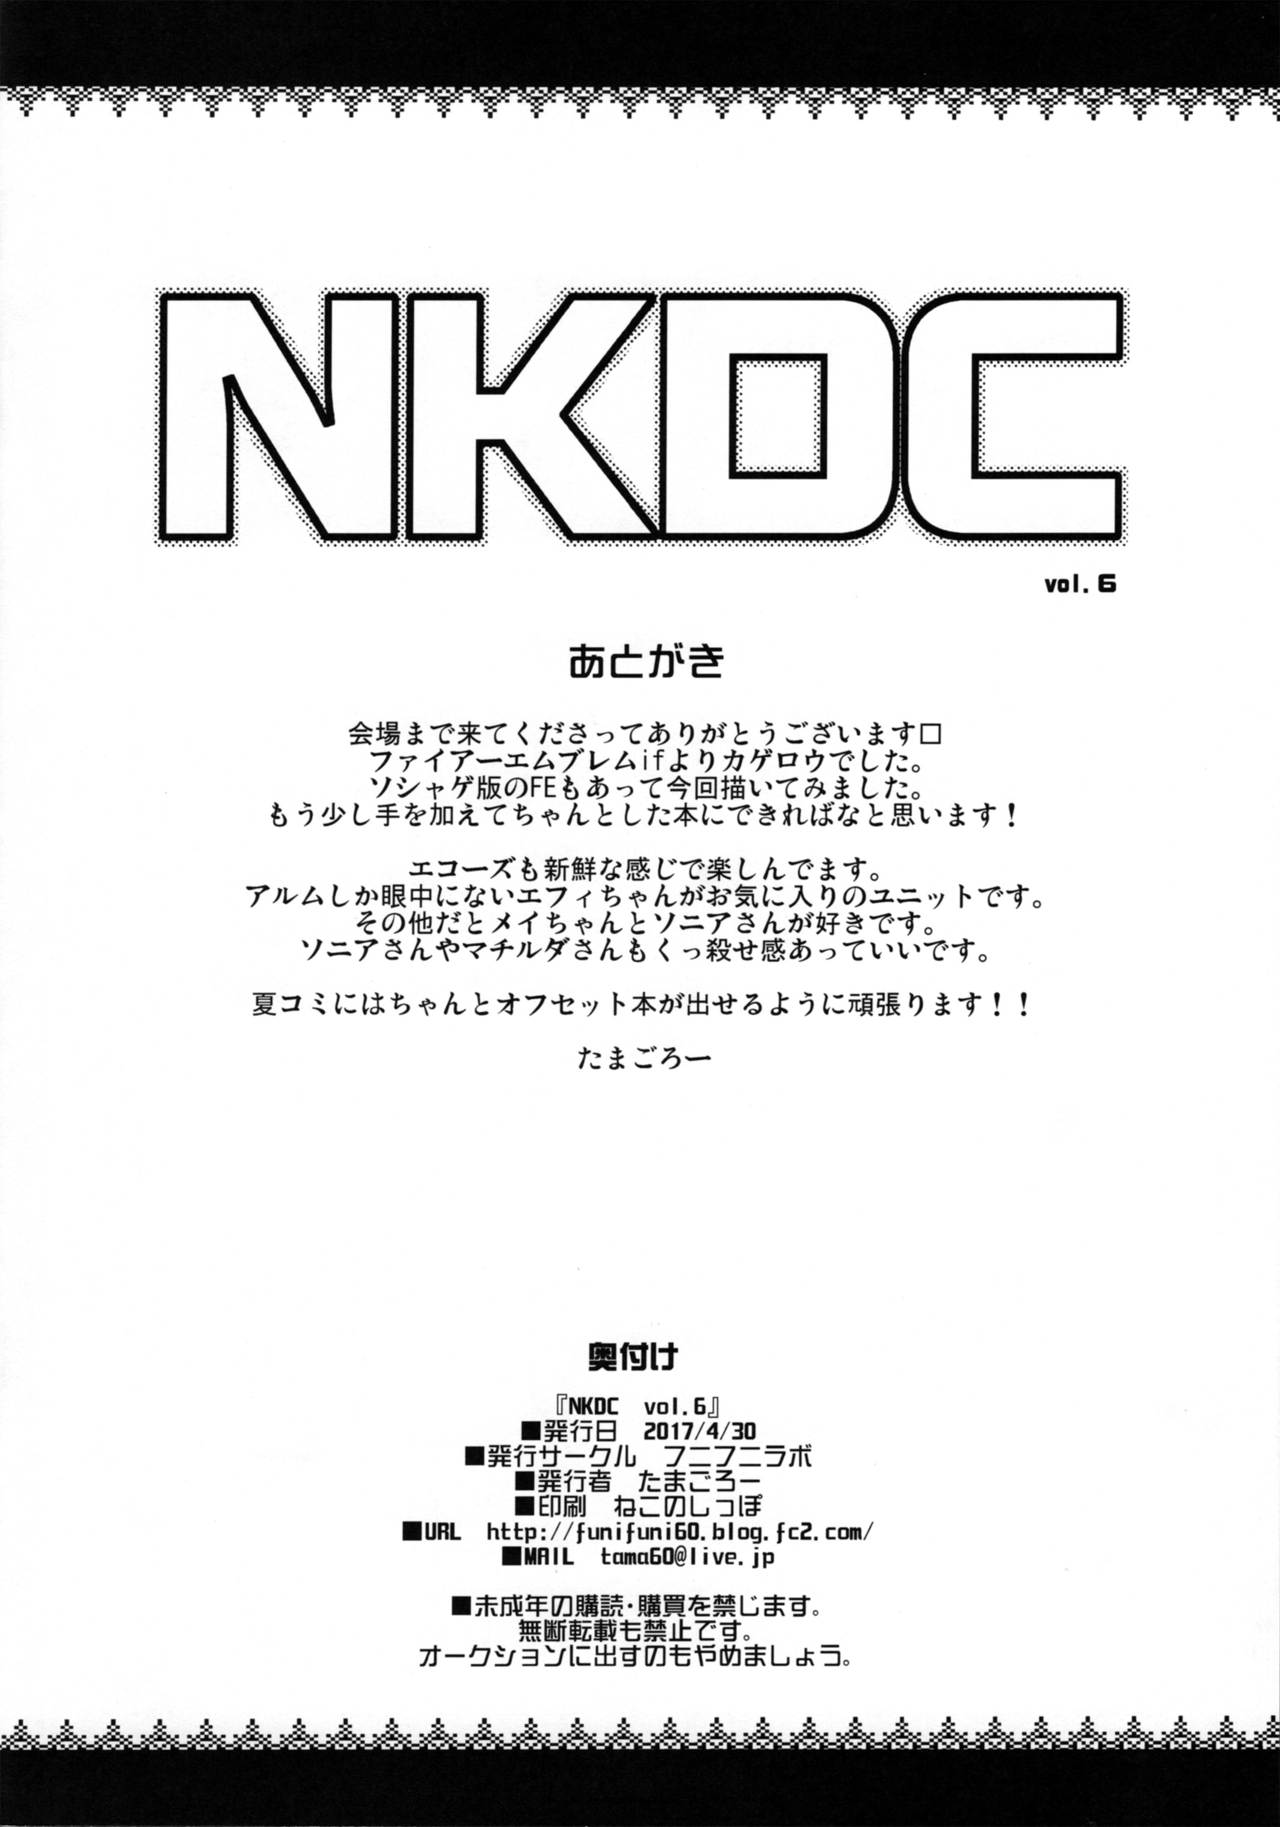 (COMIC1☆11) [Funi Funi Lab (Tamagoro)] NKDC Vol. 6 (Fire Emblem Fates) page 8 full